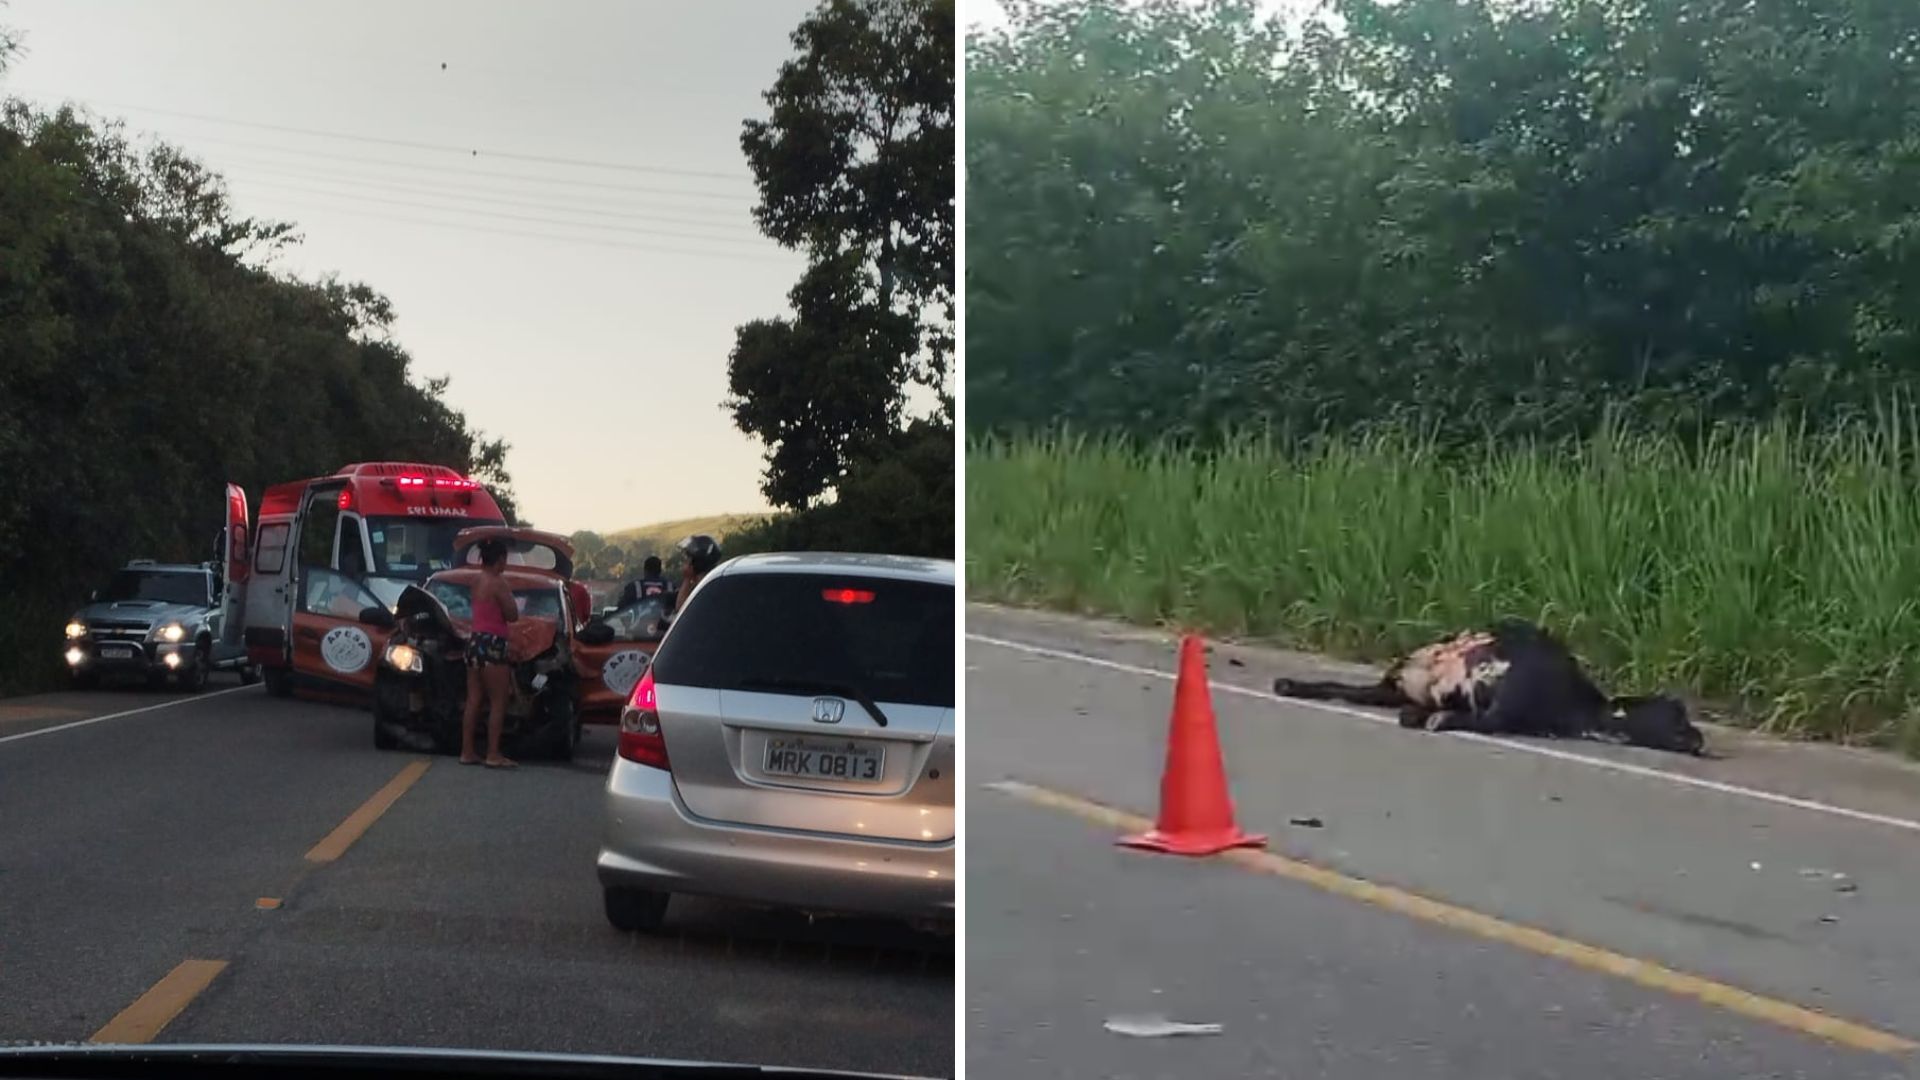 Acidente envolvendo moto, automóvel da Prefeitura de Marataízes e a vaca ocorreu na manhã desta terça-feira (5); três pessoas ficaram feridas, e animal atingido morreu no local